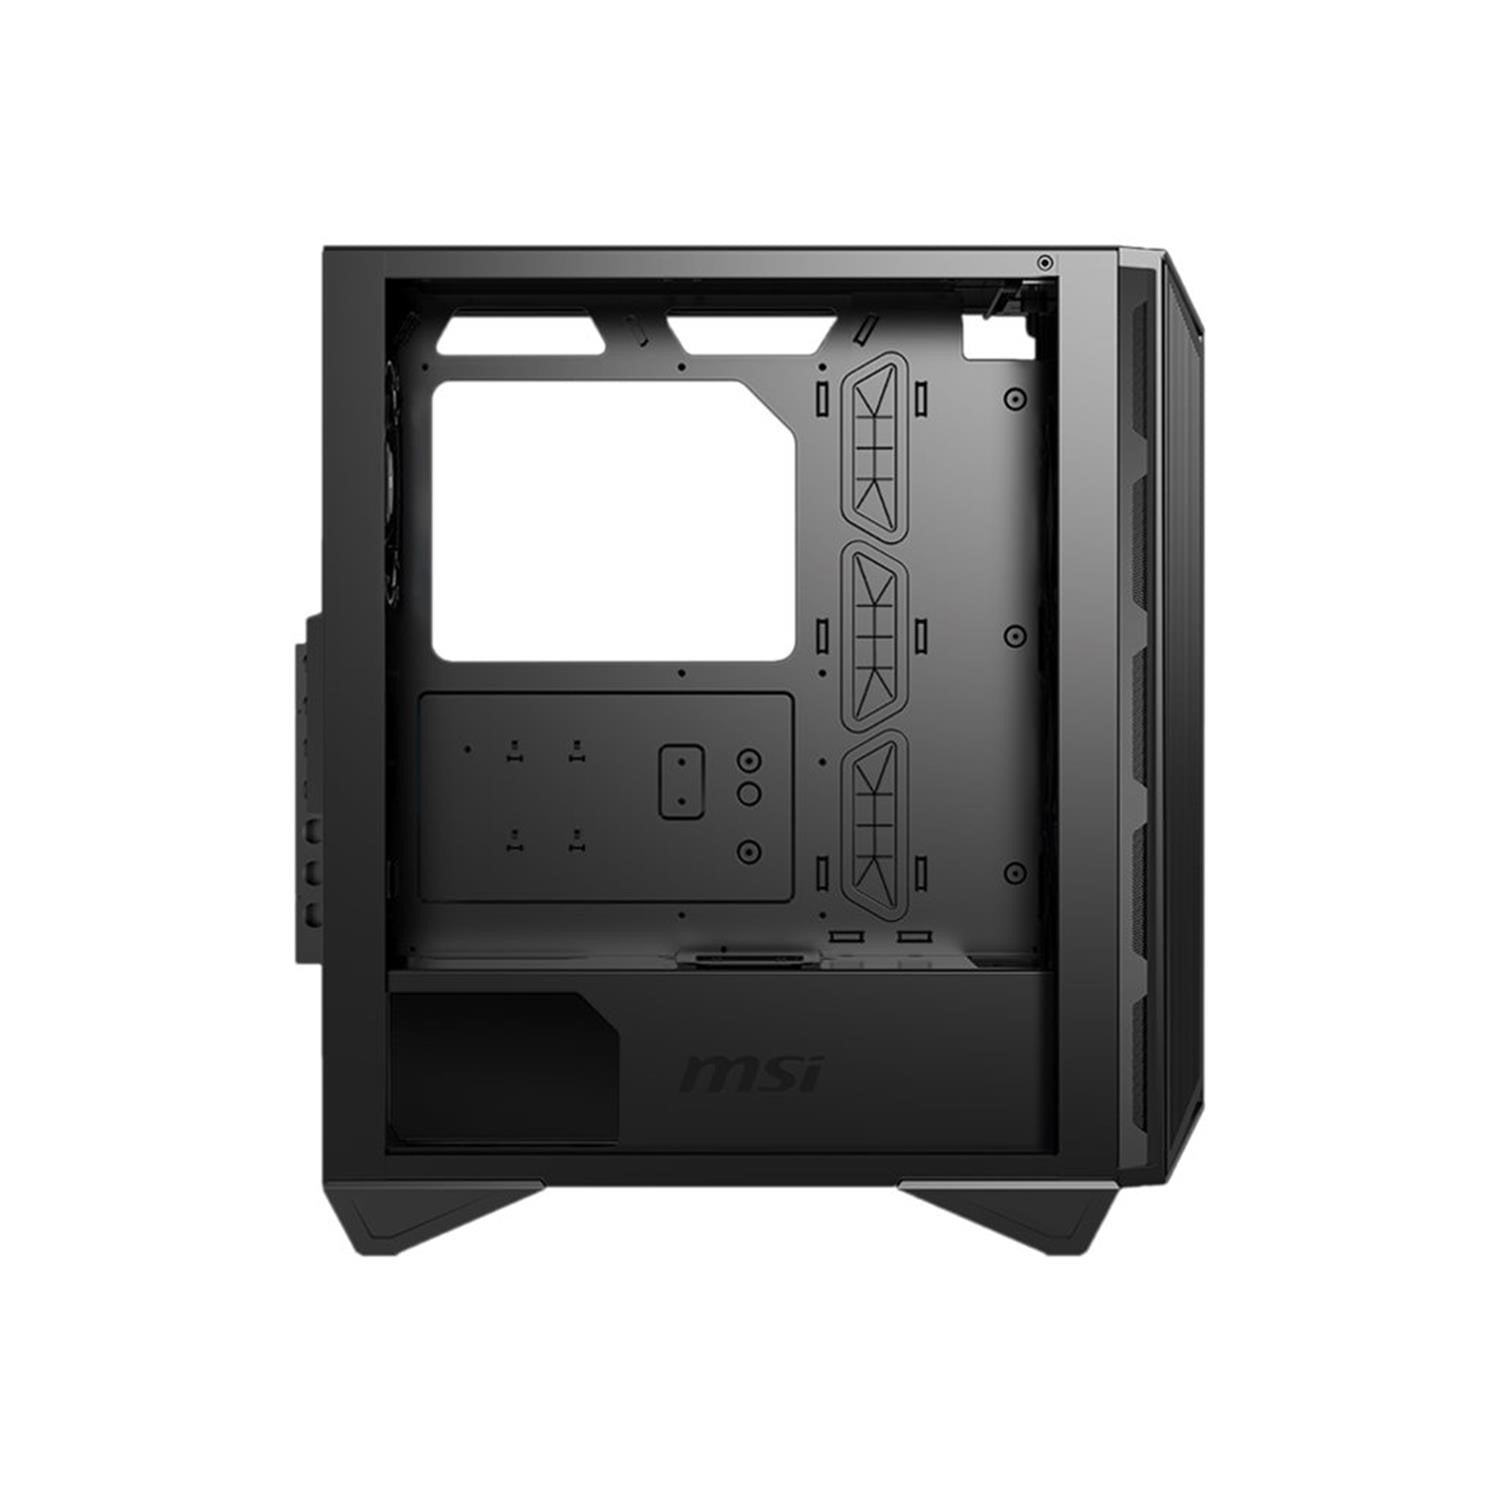 MSI MPG GUNGNIR 110M Mid Tower Gaming Computer Case - Black